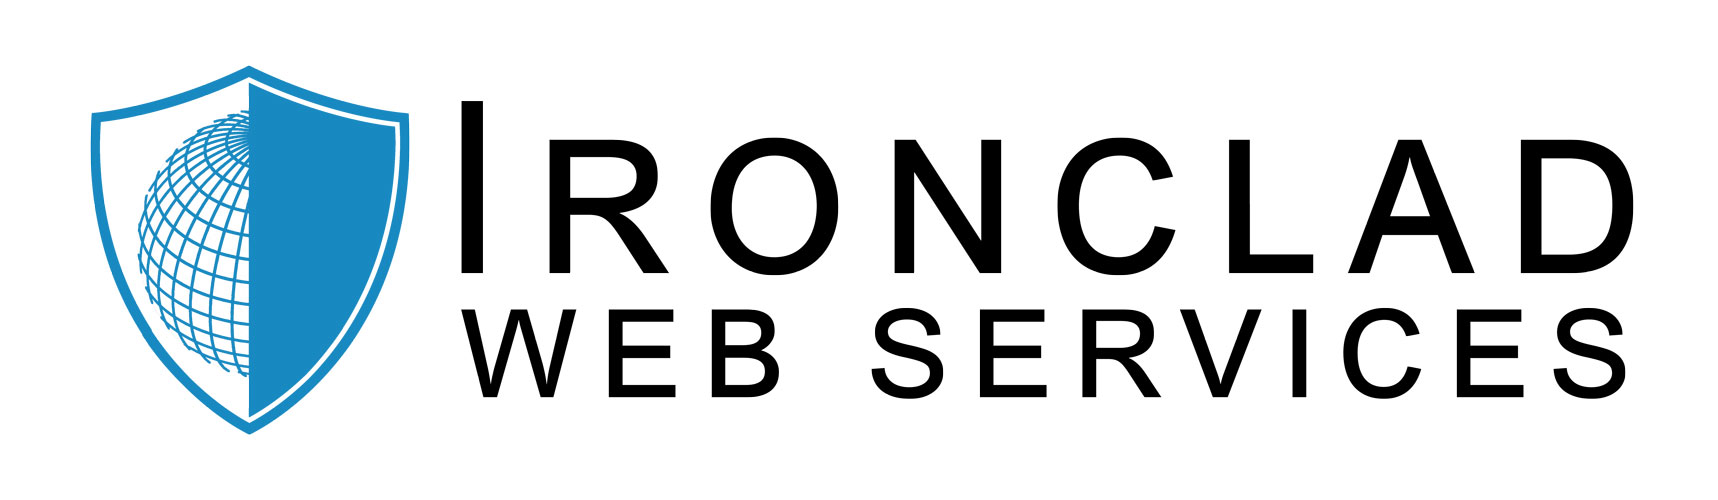 Ironclad Web Services